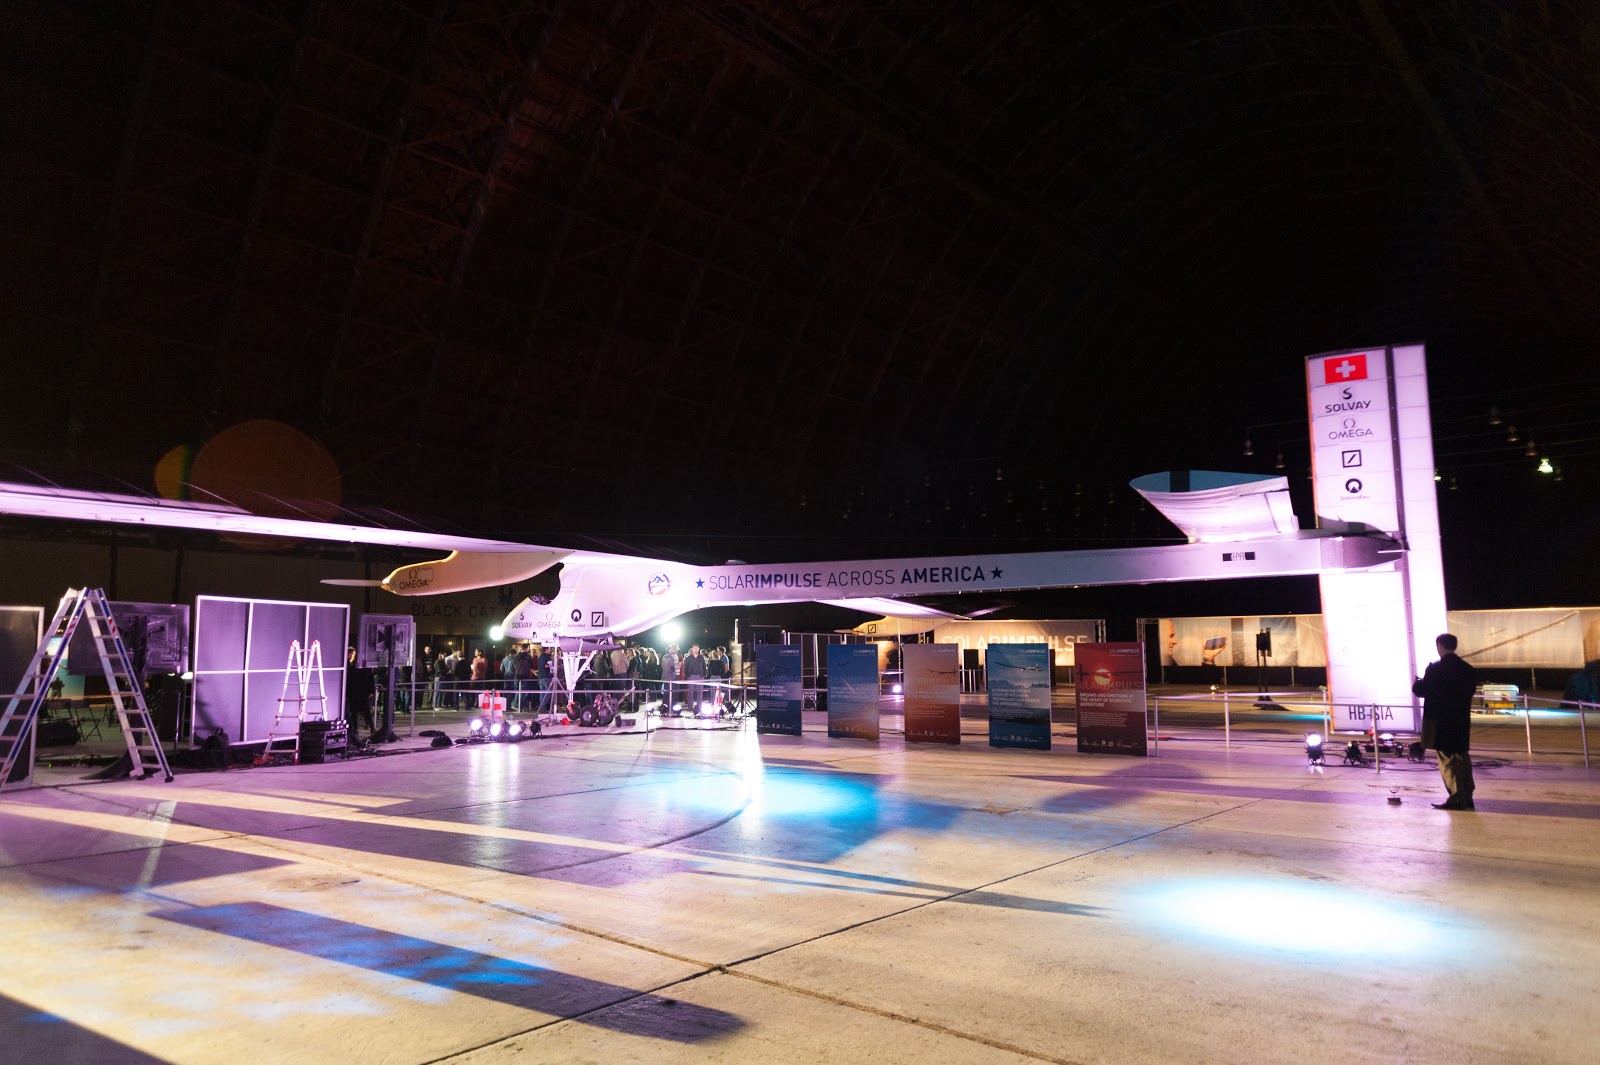 Solar Impulse in Hangar 2